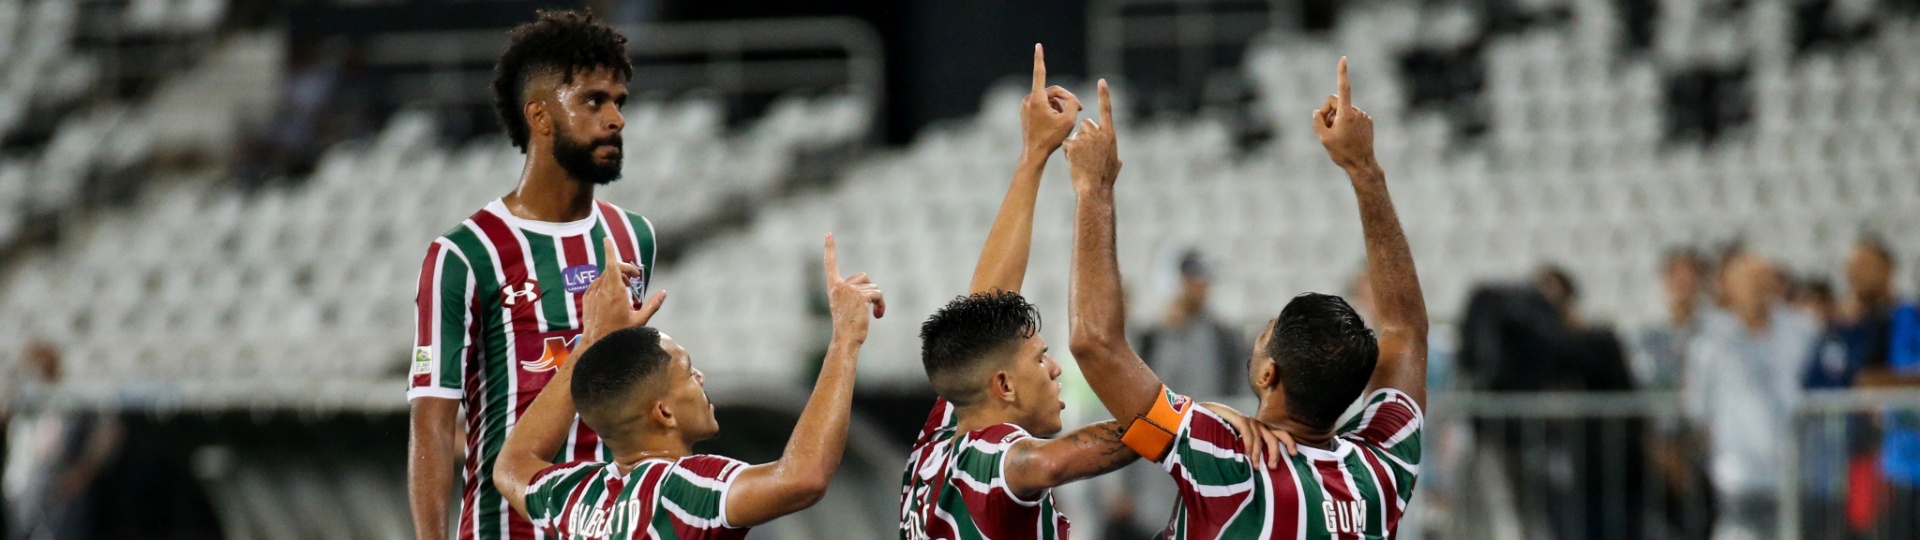 Jogadores do Fluminense comemoram gol de Gum diante do Flamengo nas semifinais da Taça Rio (segundo turno do Campeonato Carioca) de 2018